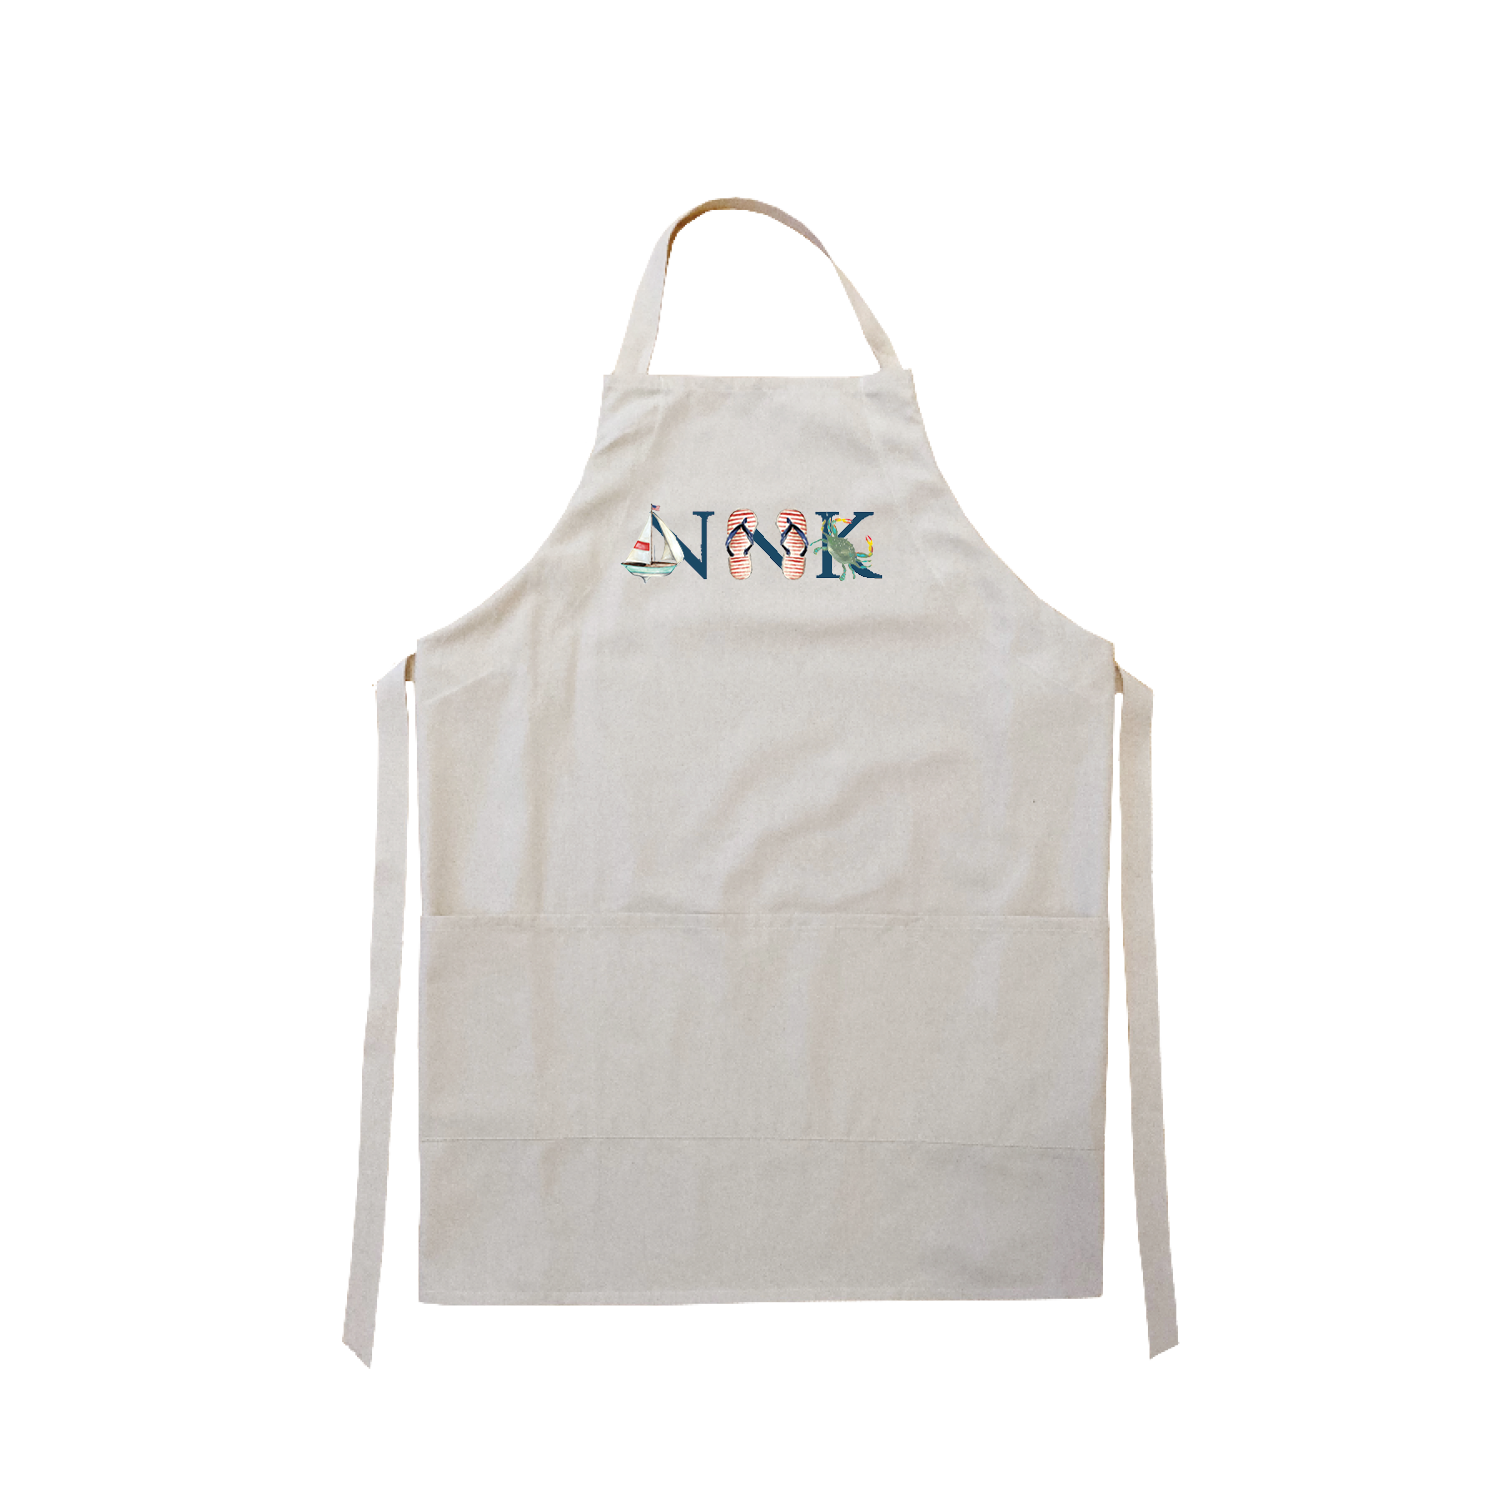 NNK navy apron